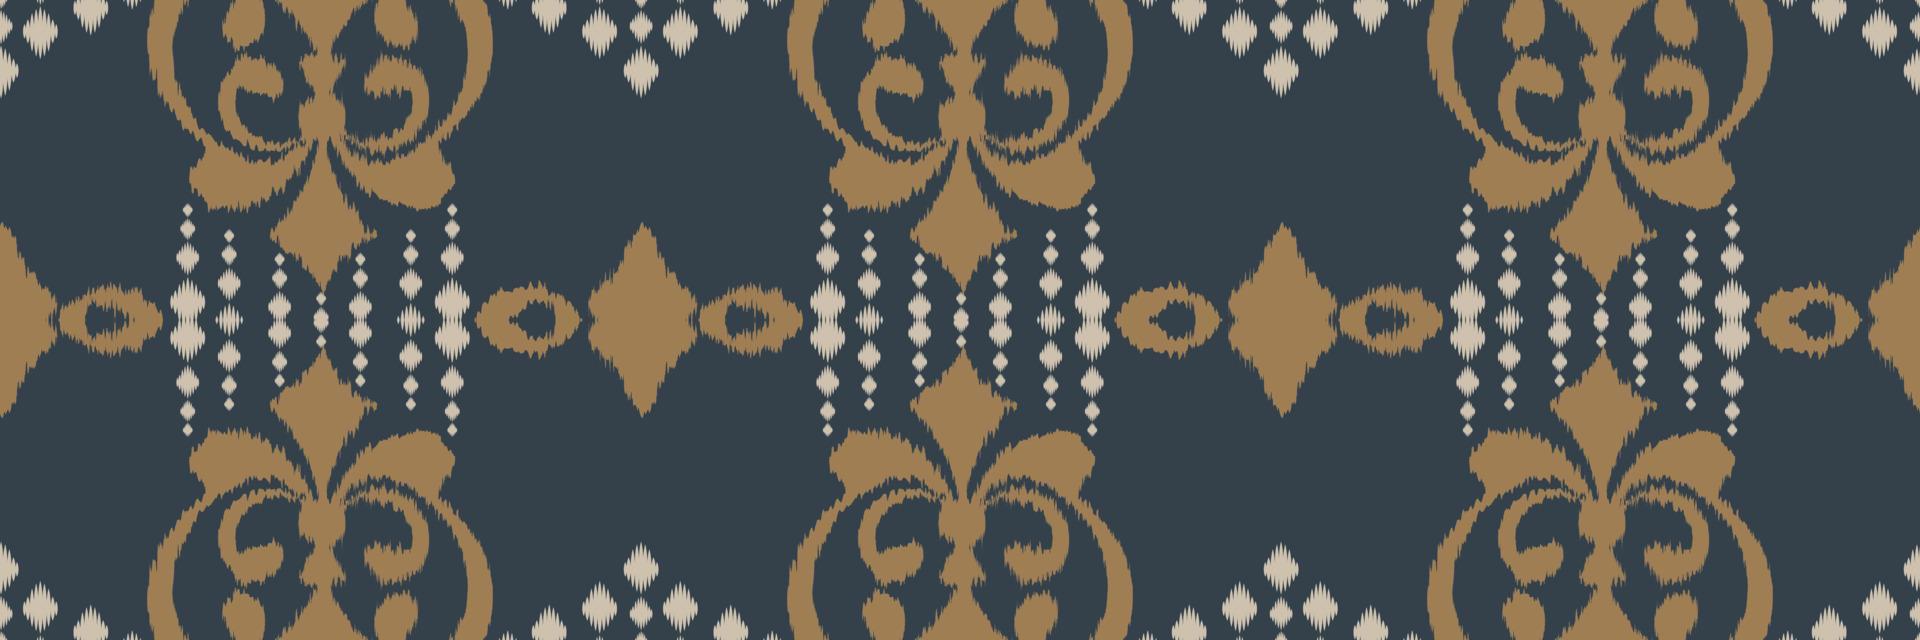 ikat ram batik textil- sömlös mönster digital vektor design för skriva ut saree kurti borneo tyg gräns borsta symboler färgrutor eleganta